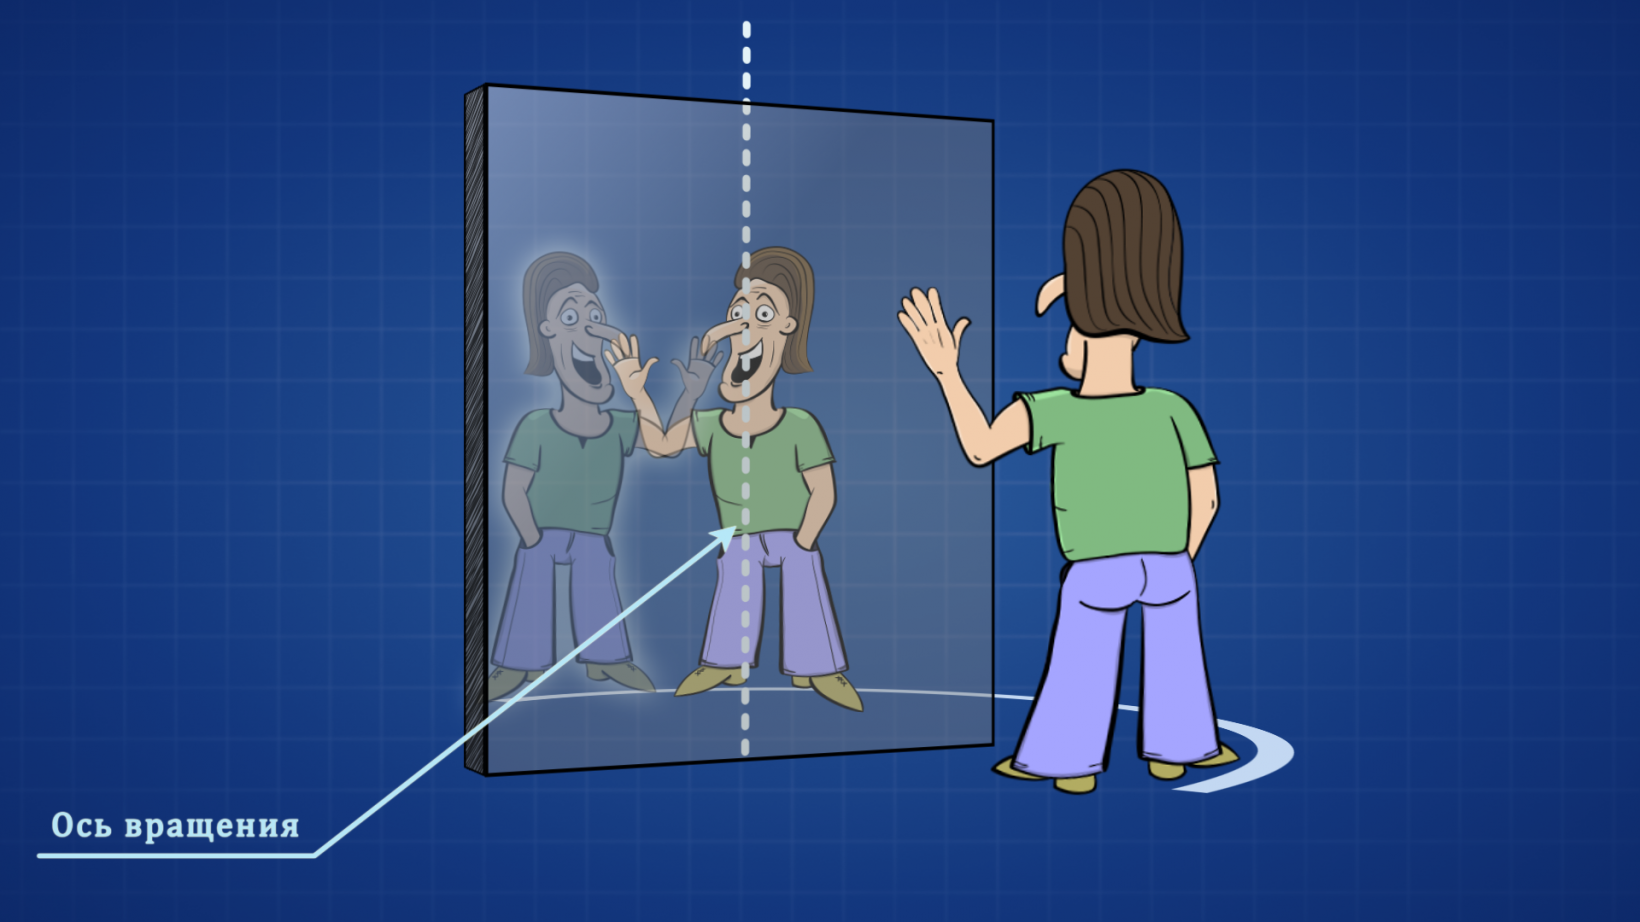 Звук поменялся местами. Лево право в зеркале. Почему зеркало меняет местами право и лево. Почему зеркало меняет местами право и лево а верх и низ нет. Право и лево в зеркальном отражении.